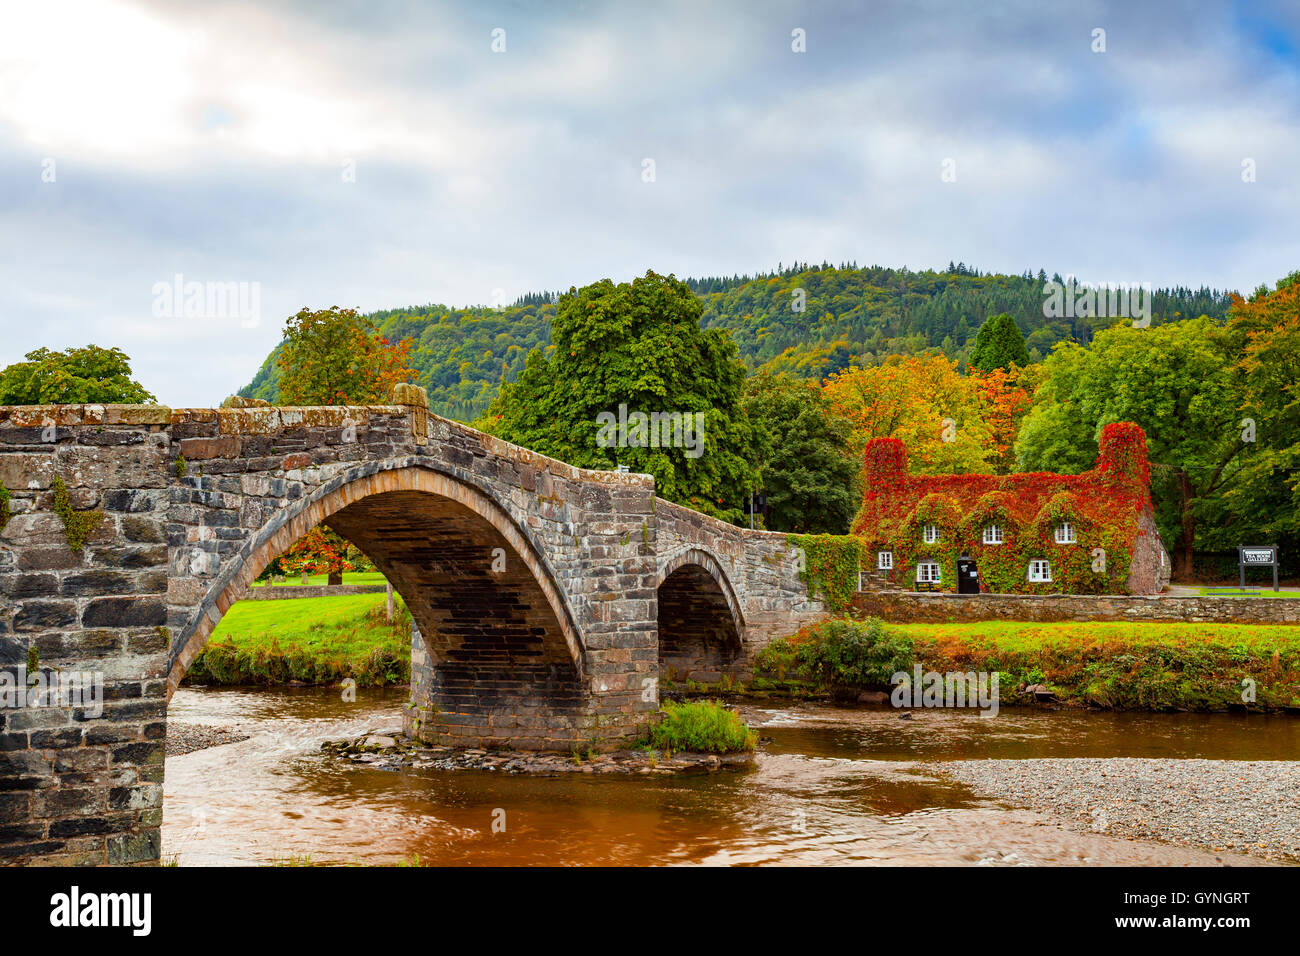 L'automne arrive à Tu Hwnt J'r Bont de thé à Llanrwst sur les rives de la rivière Conwy. L'automne commence le rougissement de la Virginia lierre rampant qui transforme un rouge vibrant pendant ce temps de l'année. Banque D'Images